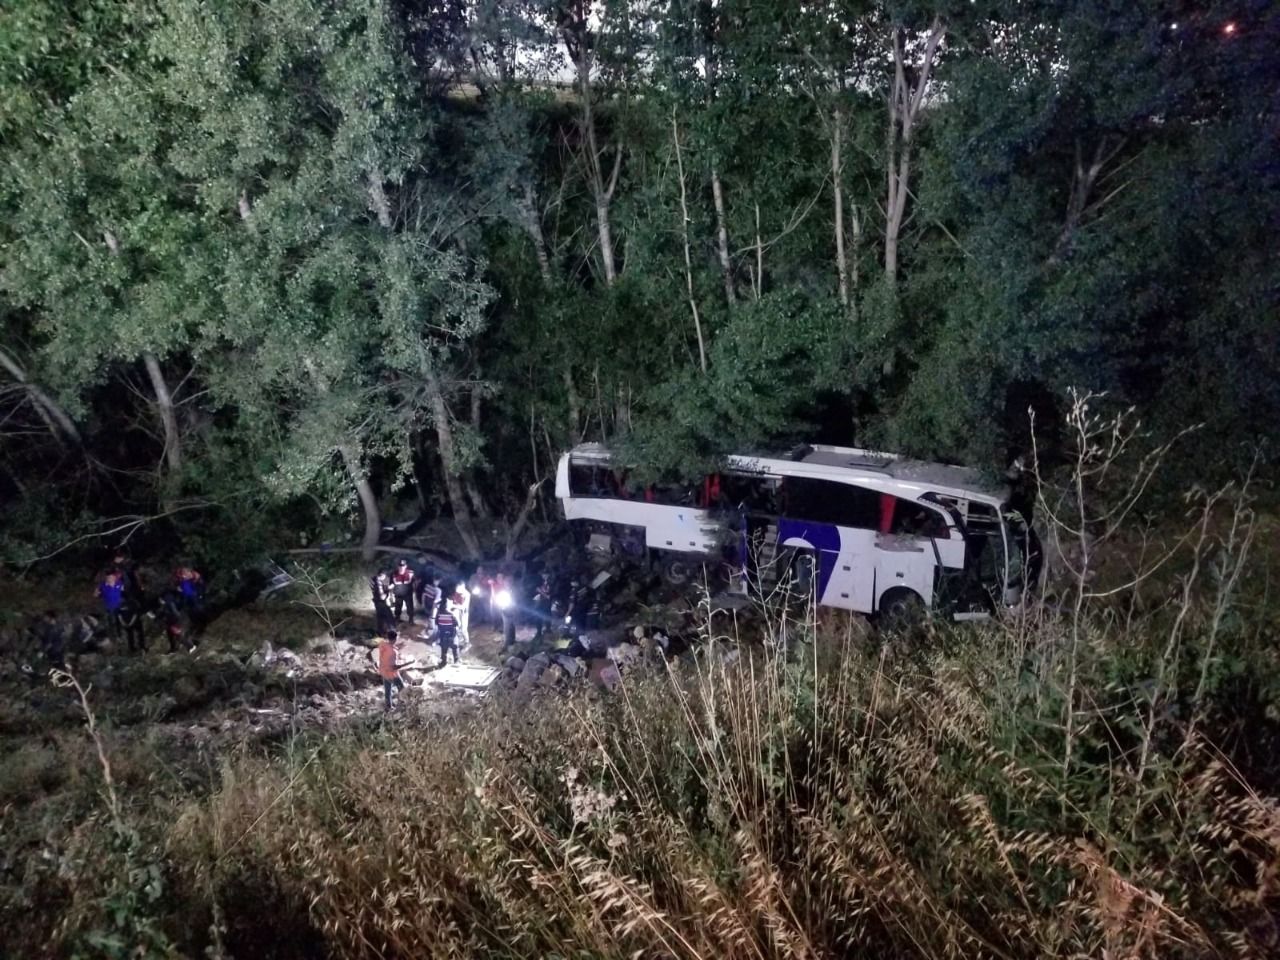 yozgat otobüs kazası